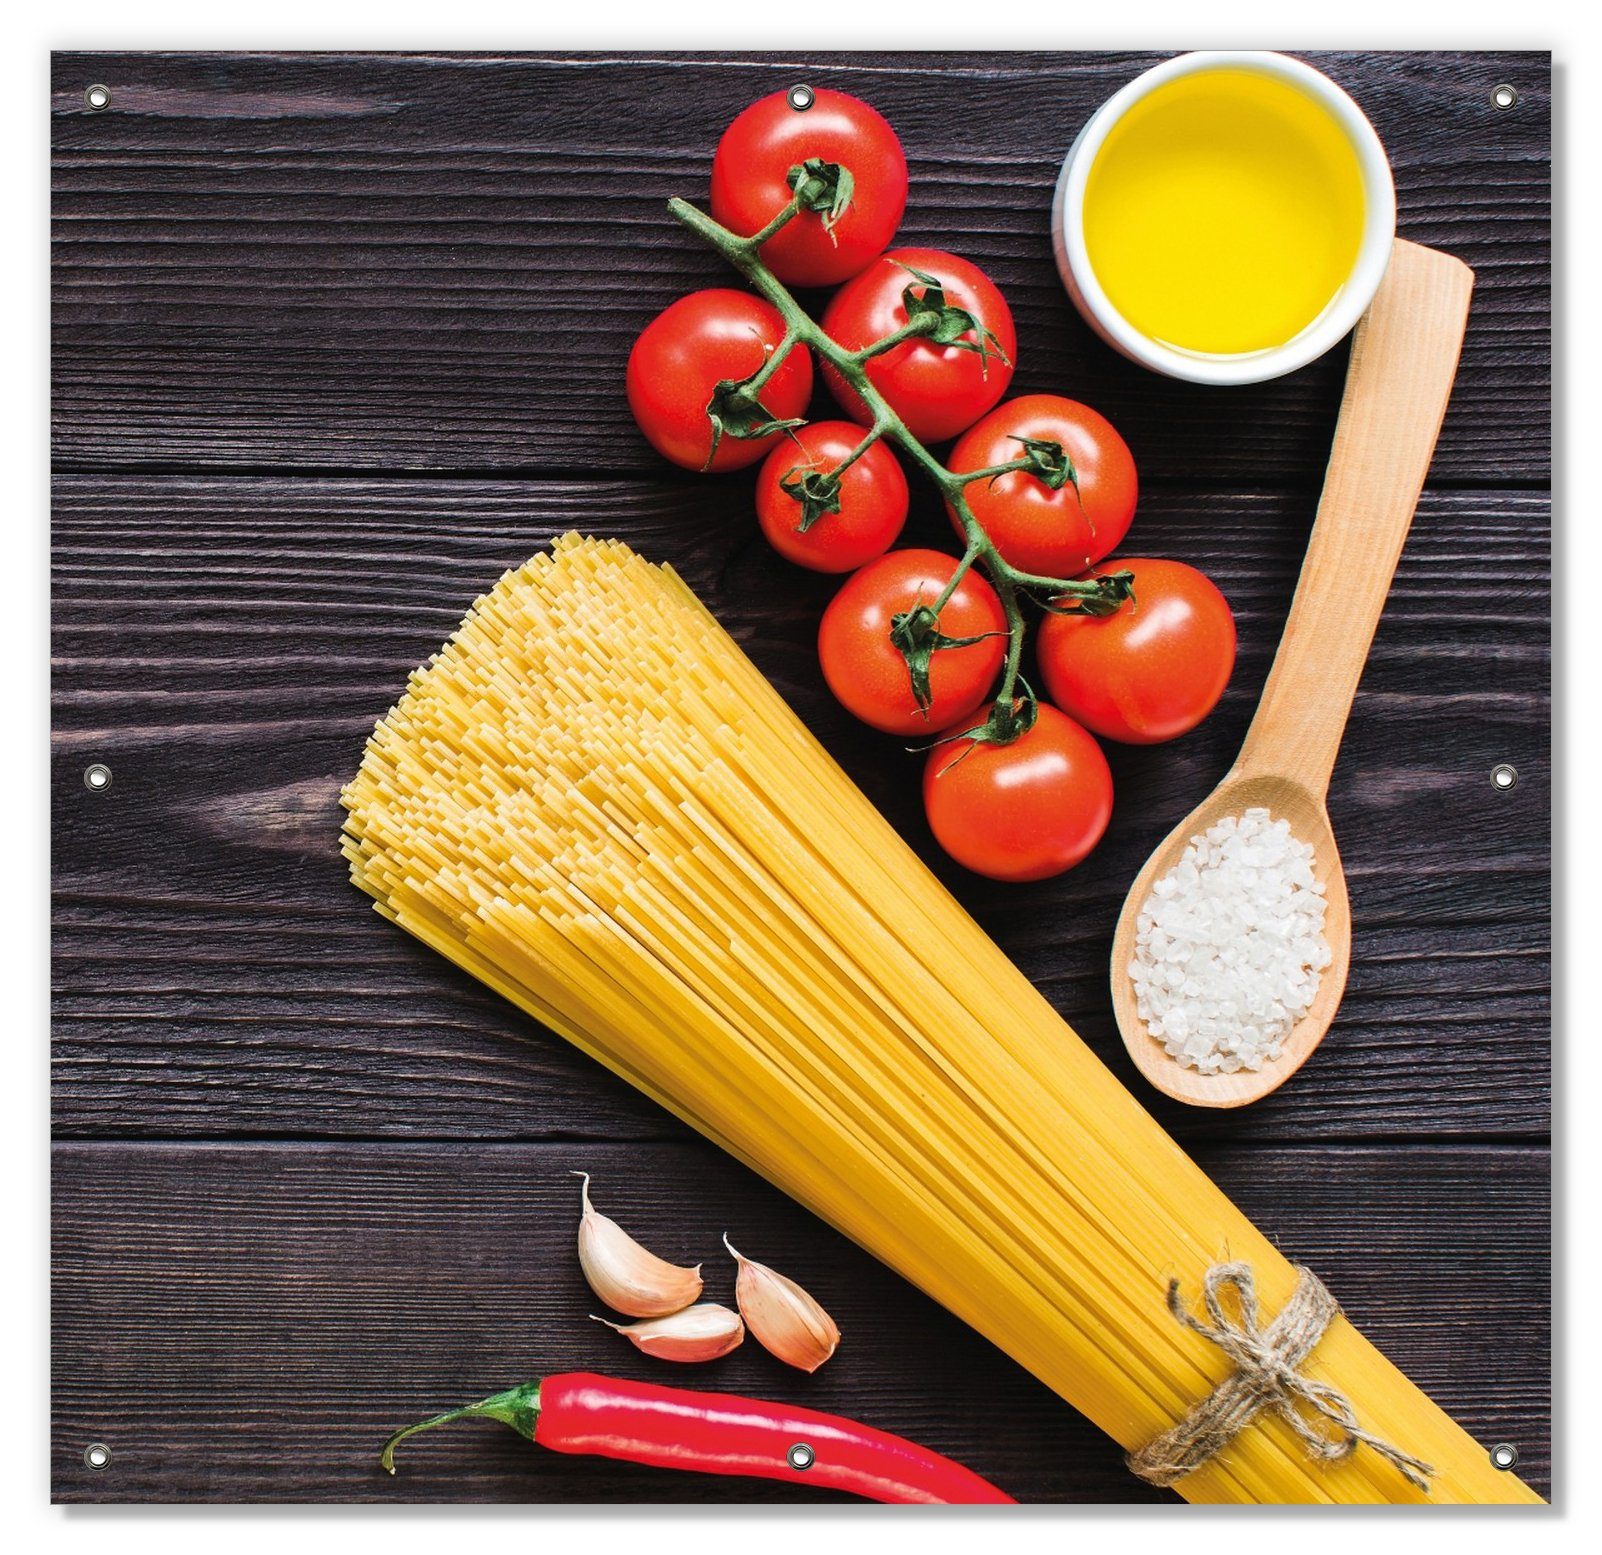 Ausverkauf Sonnenschutz Italienisches Wallario, und mit Menü wiederablösbar blickdicht, wiederverwendbar Saugnäpfen, mit Chilischoten, Spaghetti, und Salz Tomaten